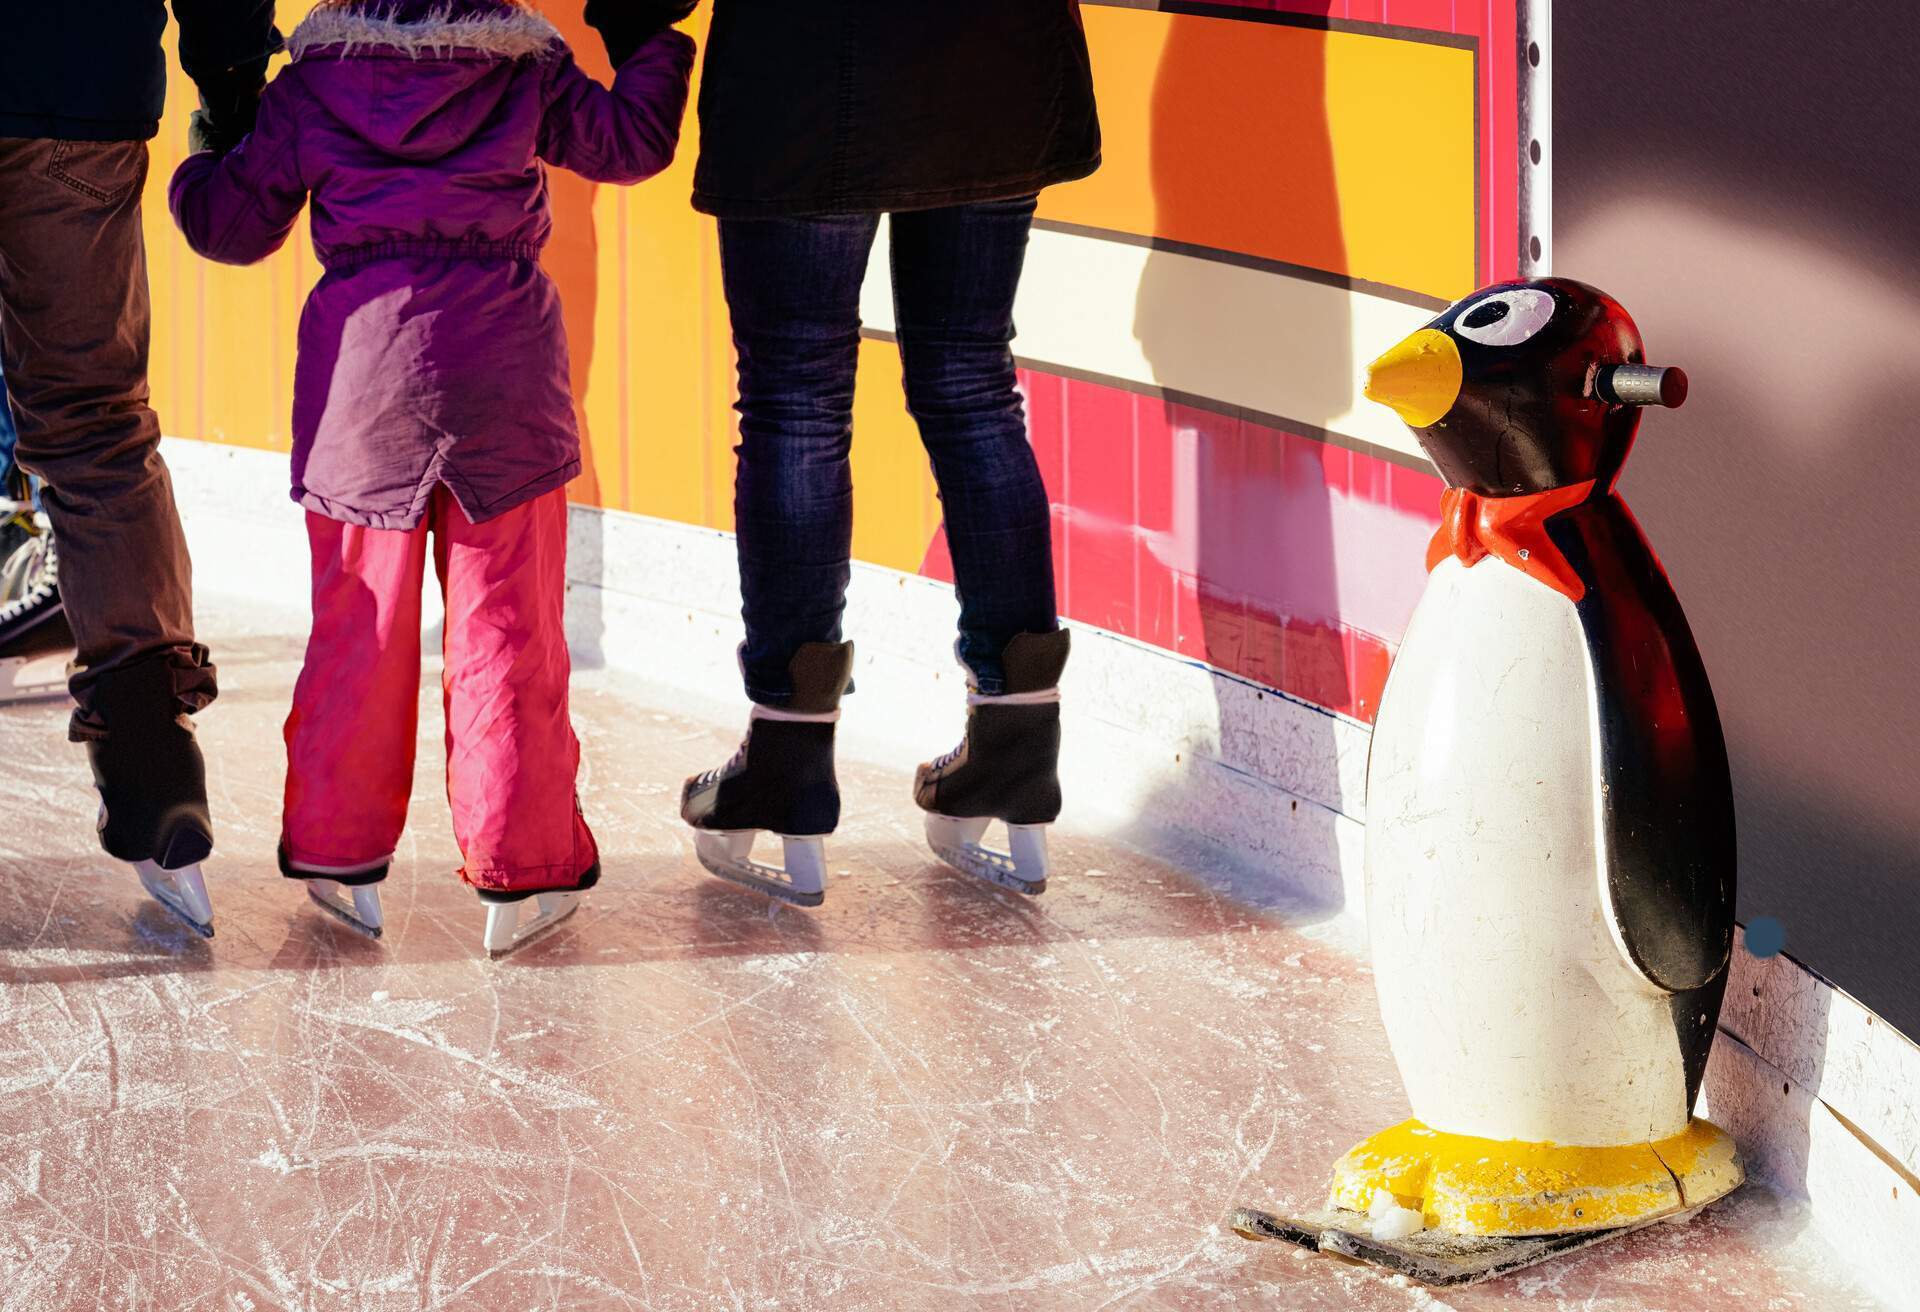  Des familles patinent sur la patinoire du marché de Noël à Berlin, aidées par des supports en forme de pingouin et des assistants